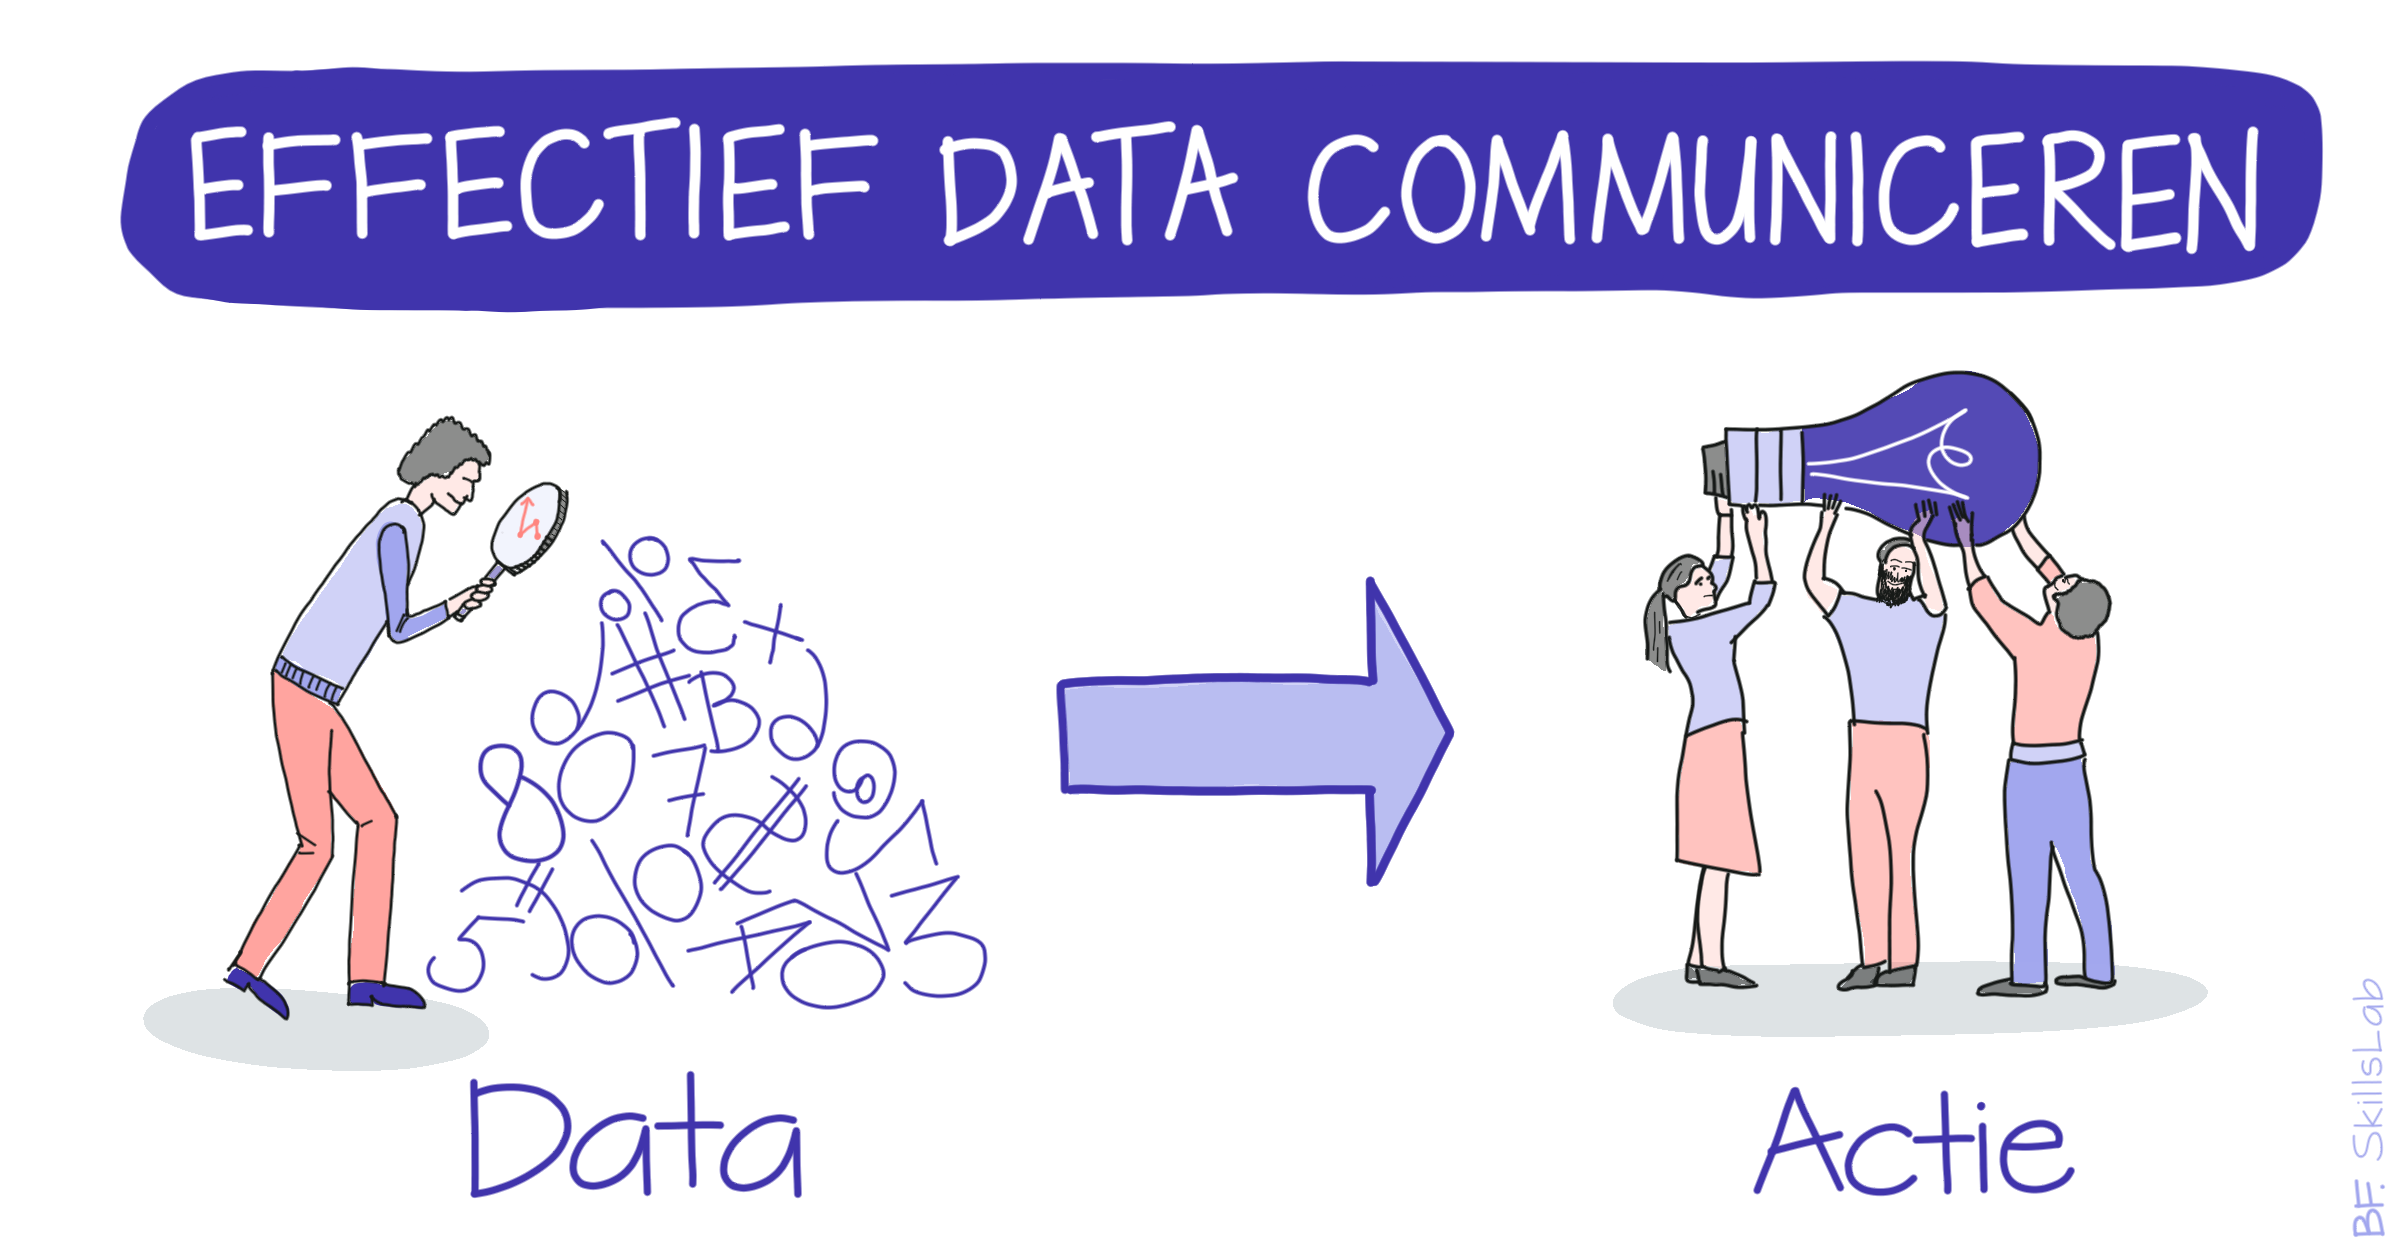 Effectief data communiceren is gericht op actie